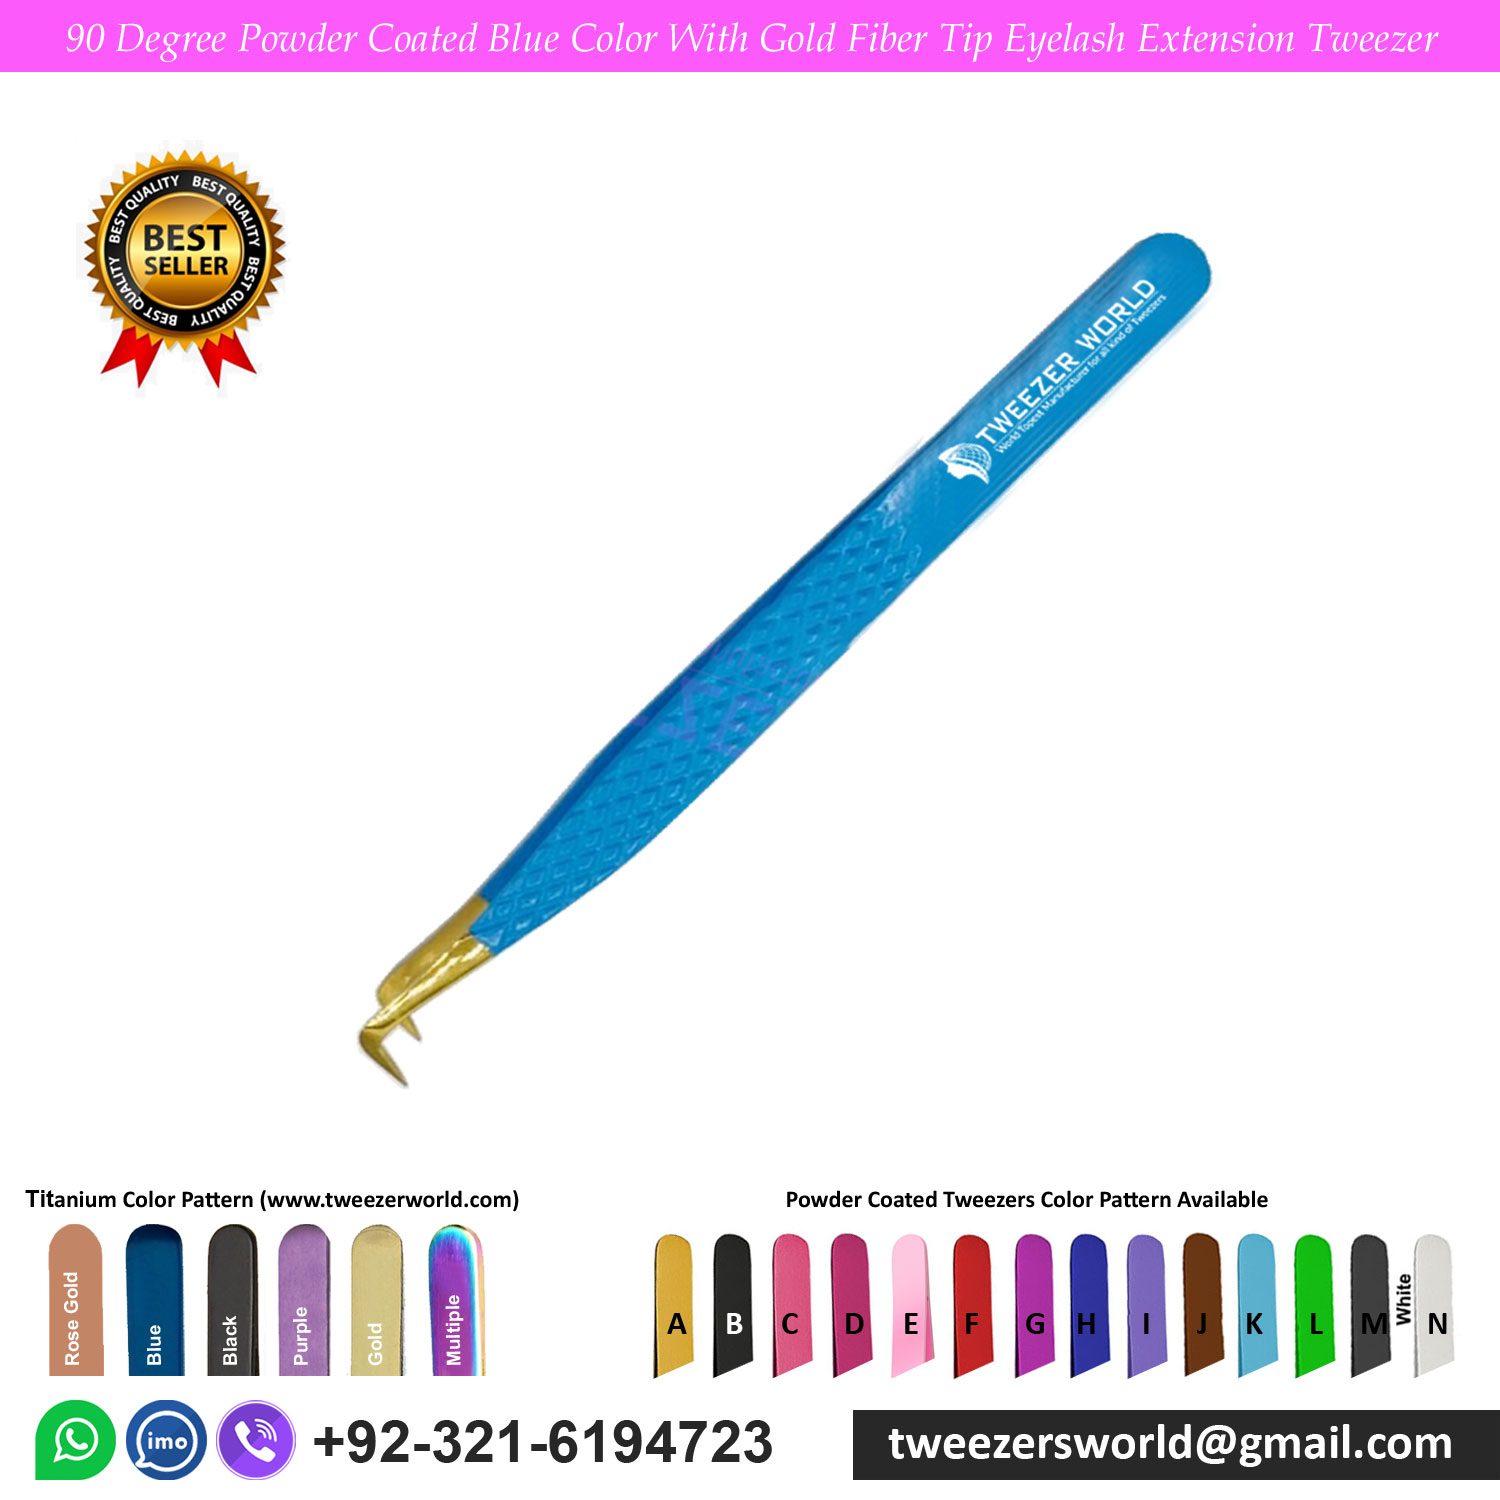 90 Degree Powder Coated Blue Color With Gold Fiber Tip Eyelash Extension Tweezer